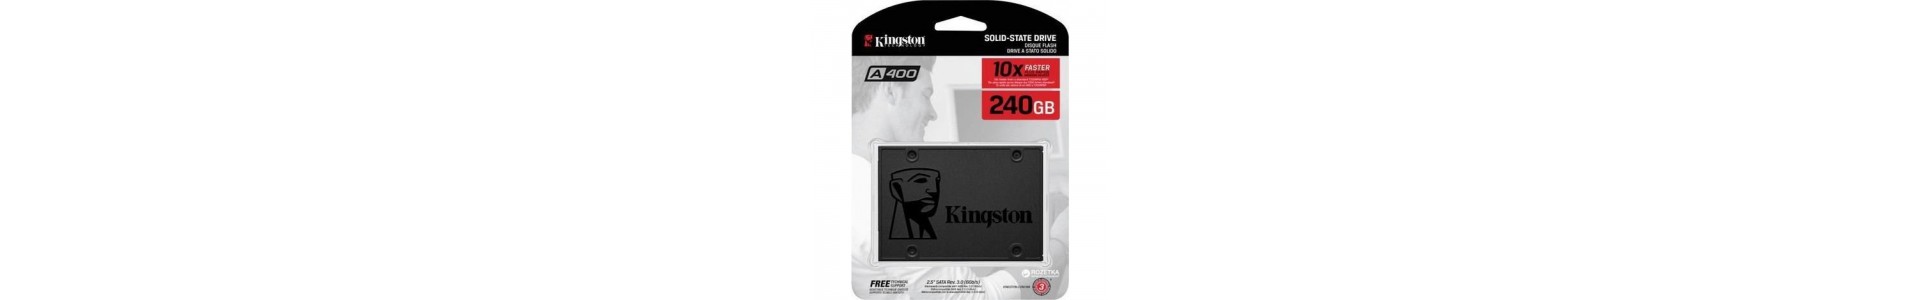 SSD 240GB